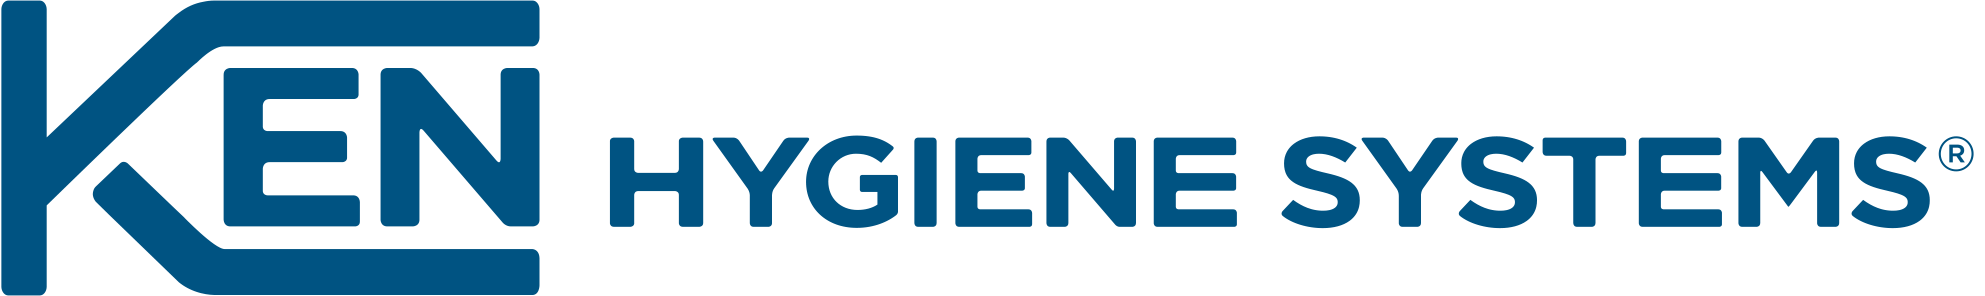 ken hygiene systems r logo